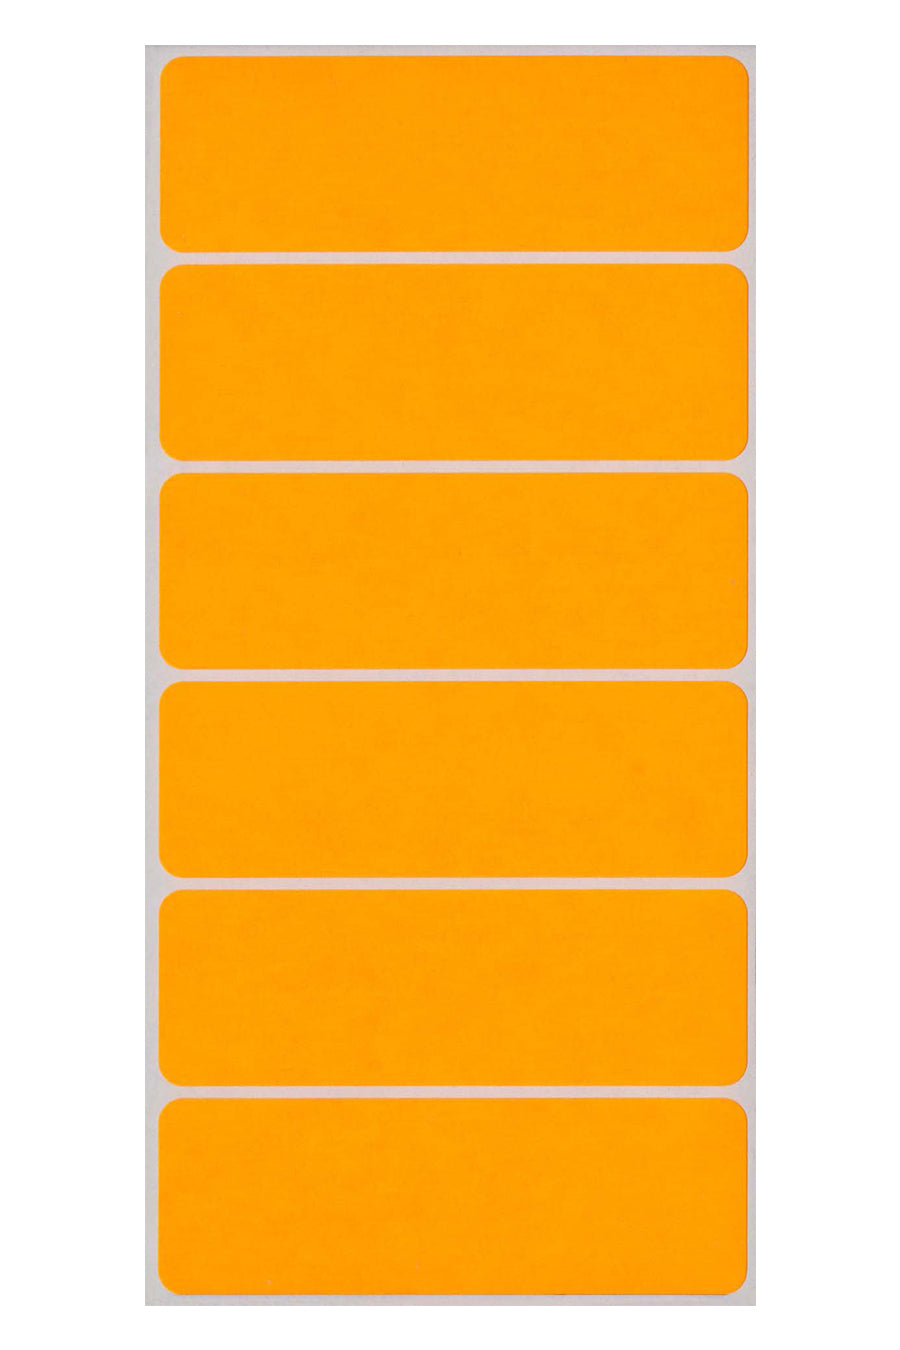 1" x 3" Color Coding Labels, Orange Neon, 200/Bx